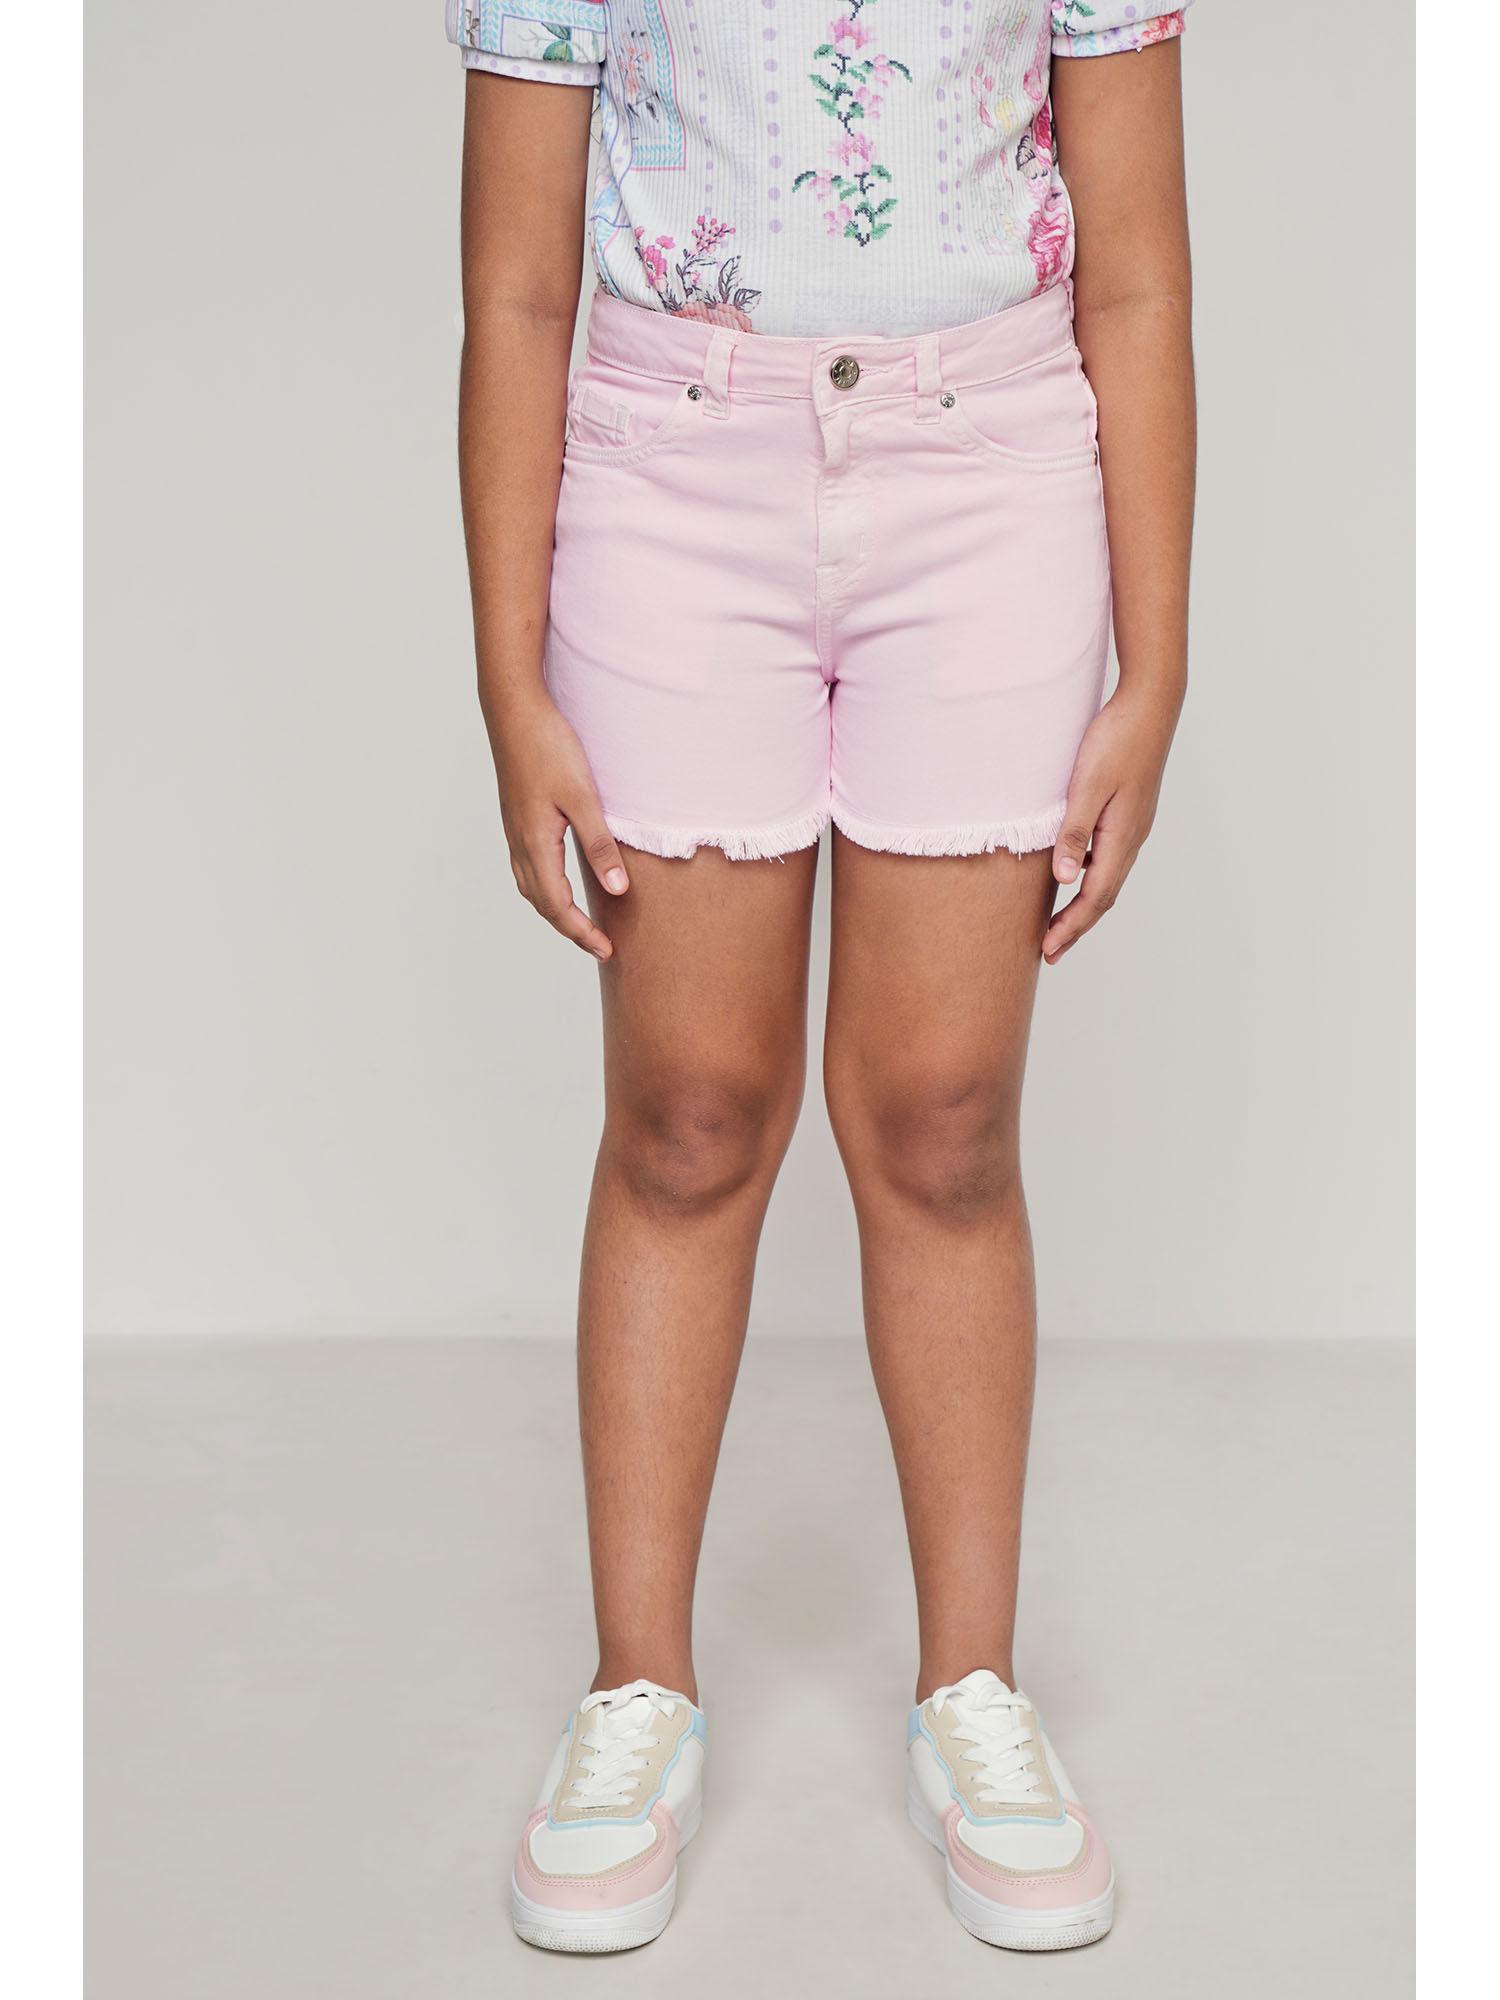 pink casual shorts